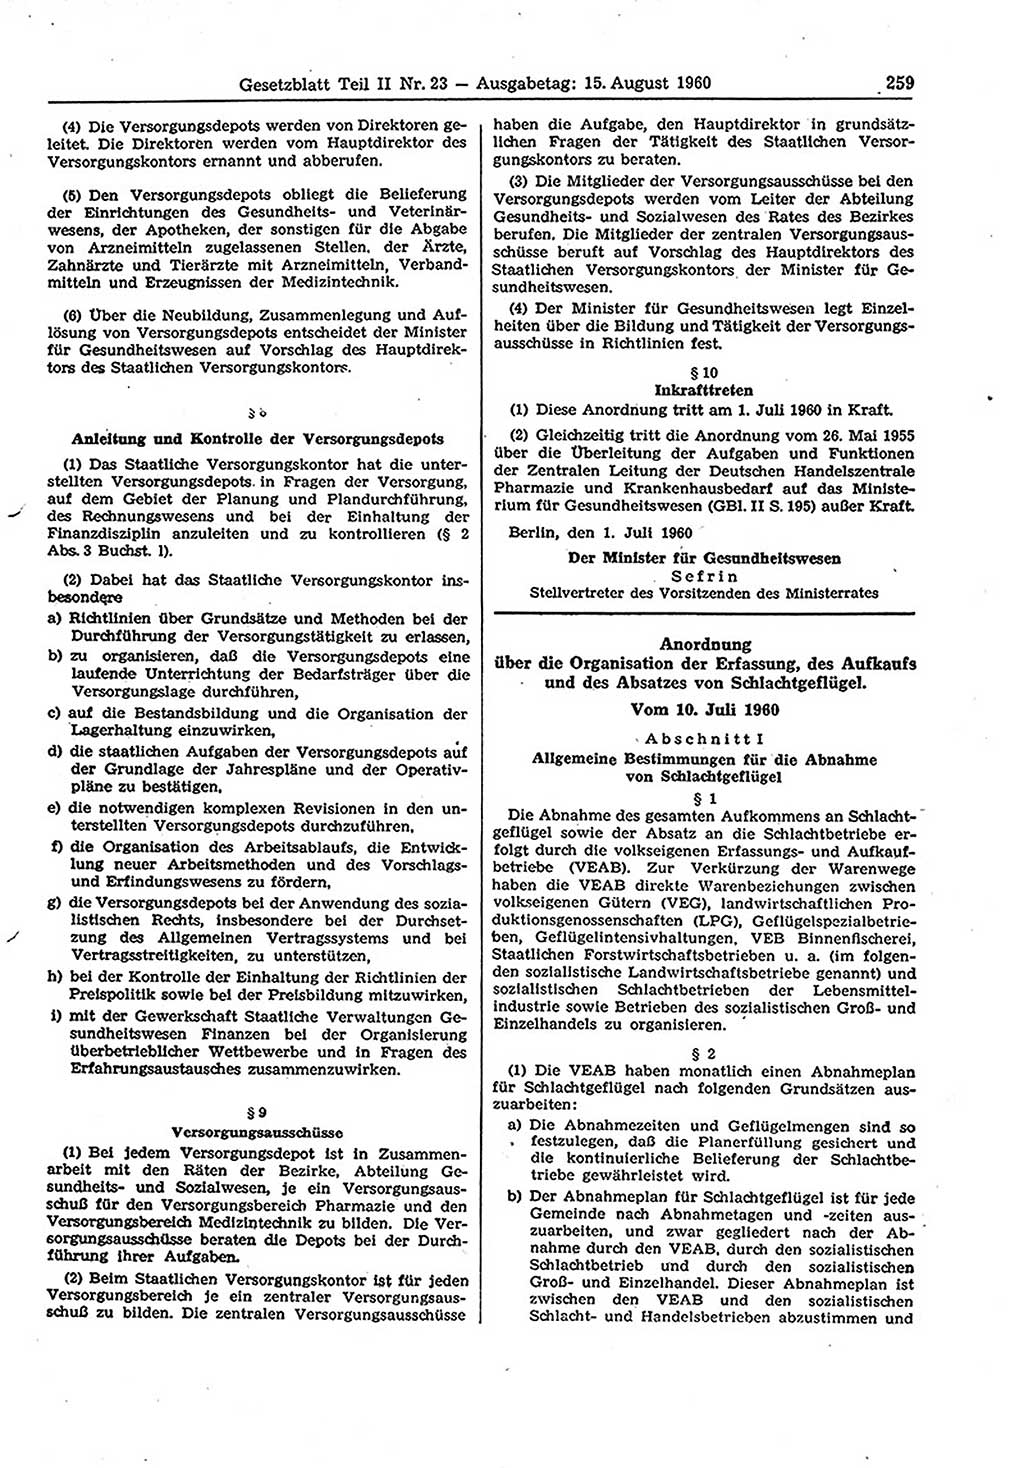 Gesetzblatt (GBl.) der Deutschen Demokratischen Republik (DDR) Teil ⅠⅠ 1960, Seite 259 (GBl. DDR ⅠⅠ 1960, S. 259)